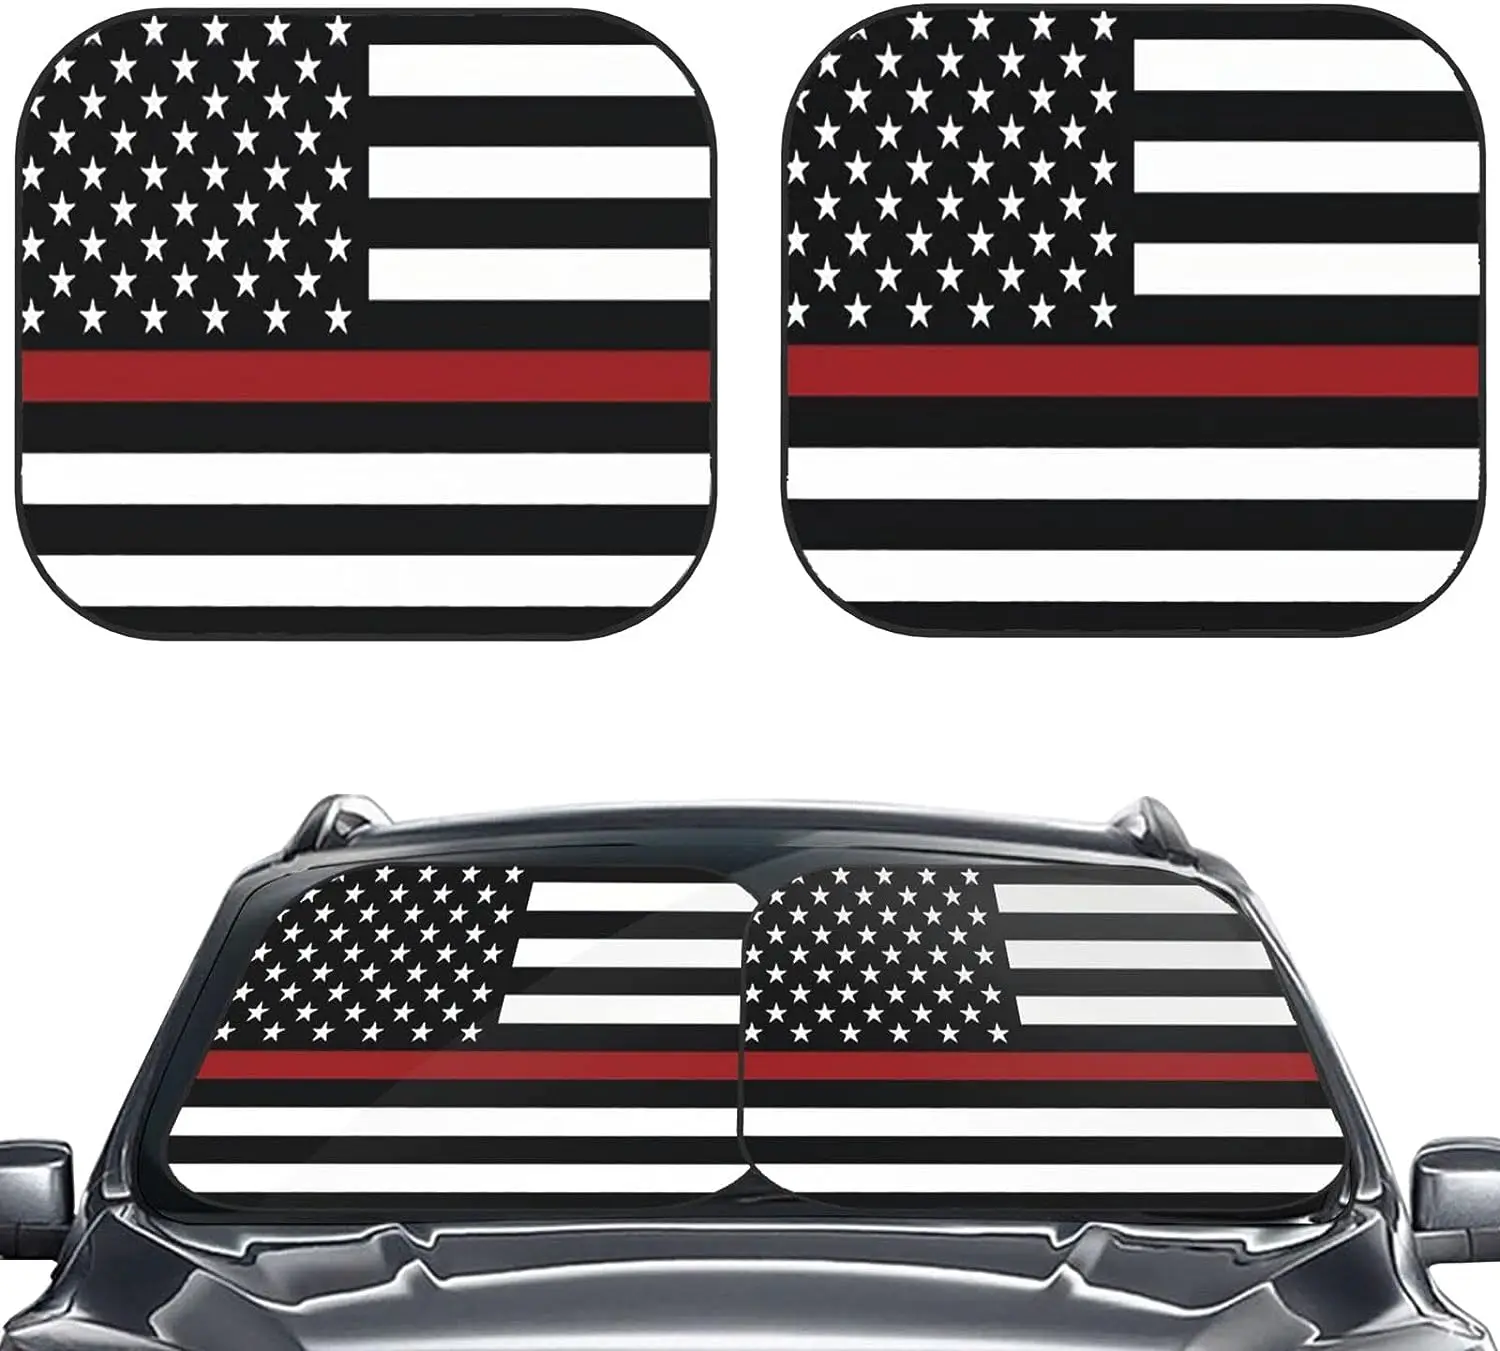 

2 шт., автомобильные складные солнцезащитные козырьки на лобовое стекло, с американским флагом